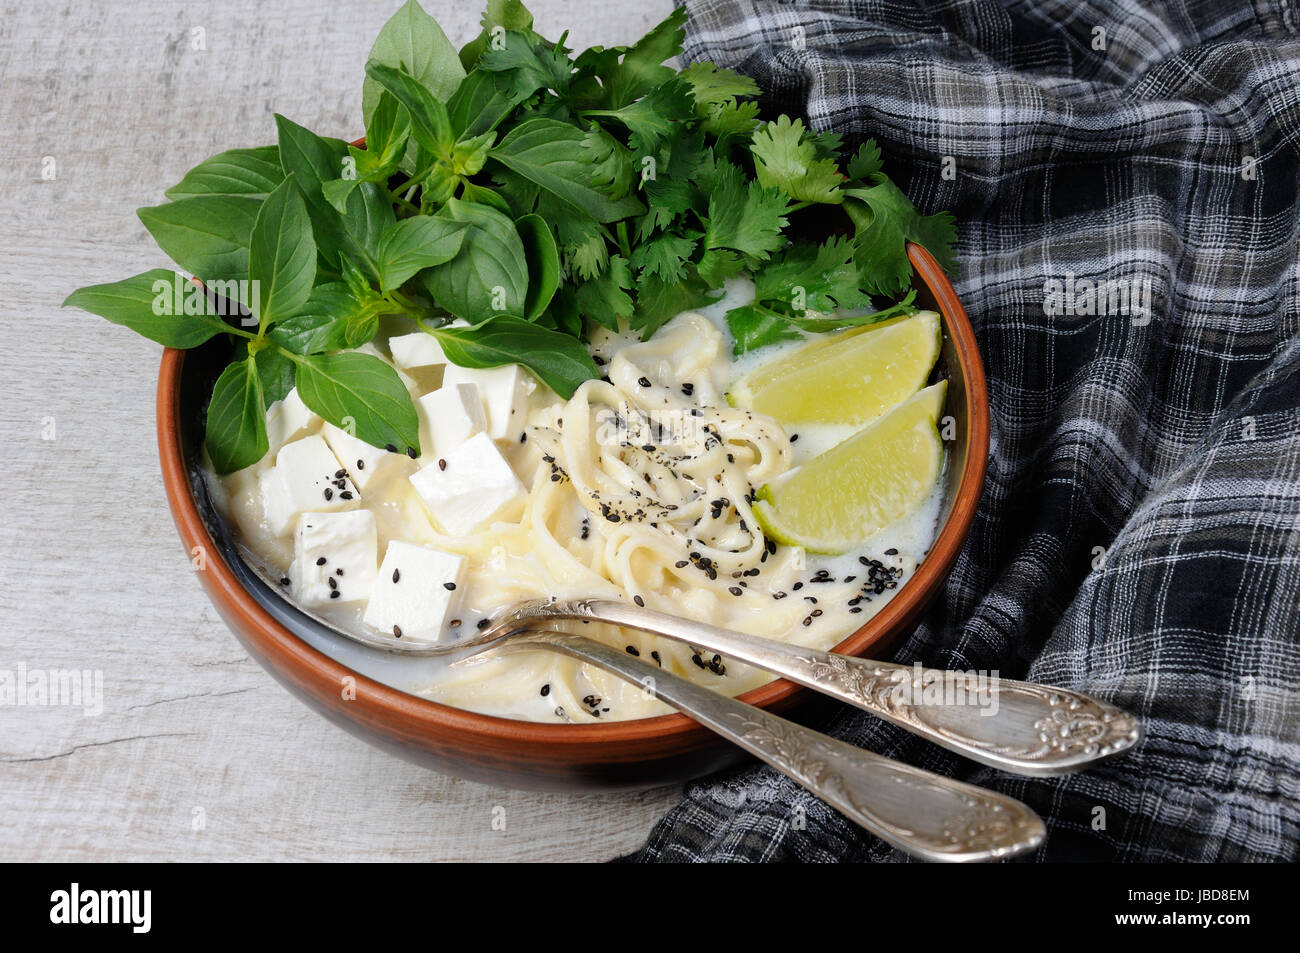 Reis-Suppe mit Nudeln und aromatisiert mit Zitronengras (Basilikum), Koriander, Sesam Tofu. Stockfoto